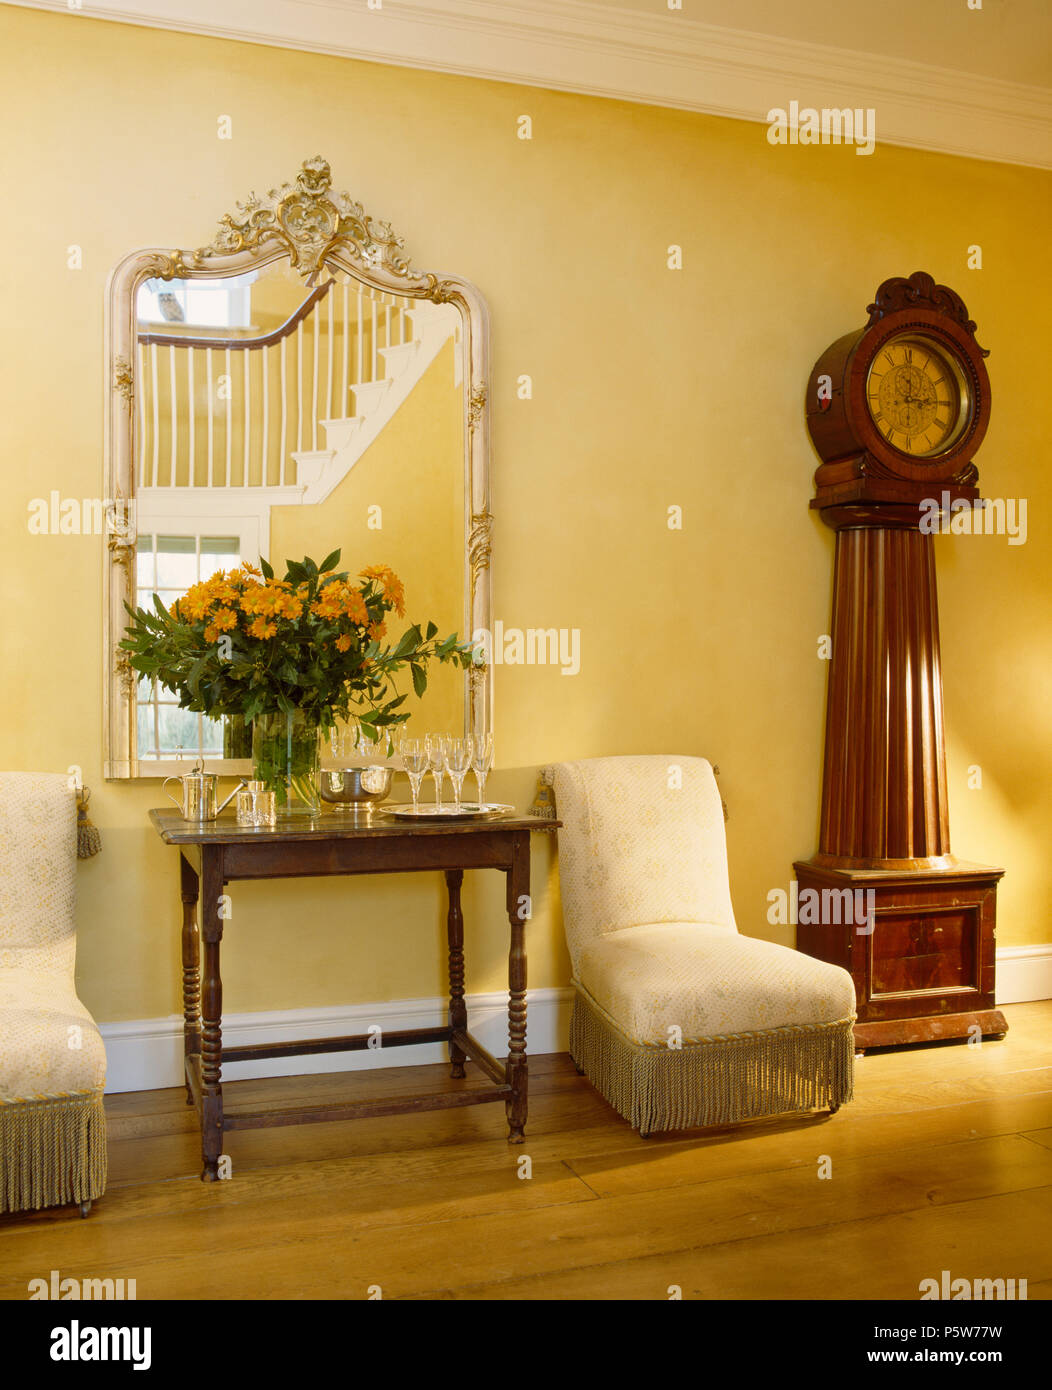 Reich verzierten Spiegel über Console Tabelle im Land Halle mit antiken Lange-Uhr und gepolsterte Stühle Creme Stockfoto